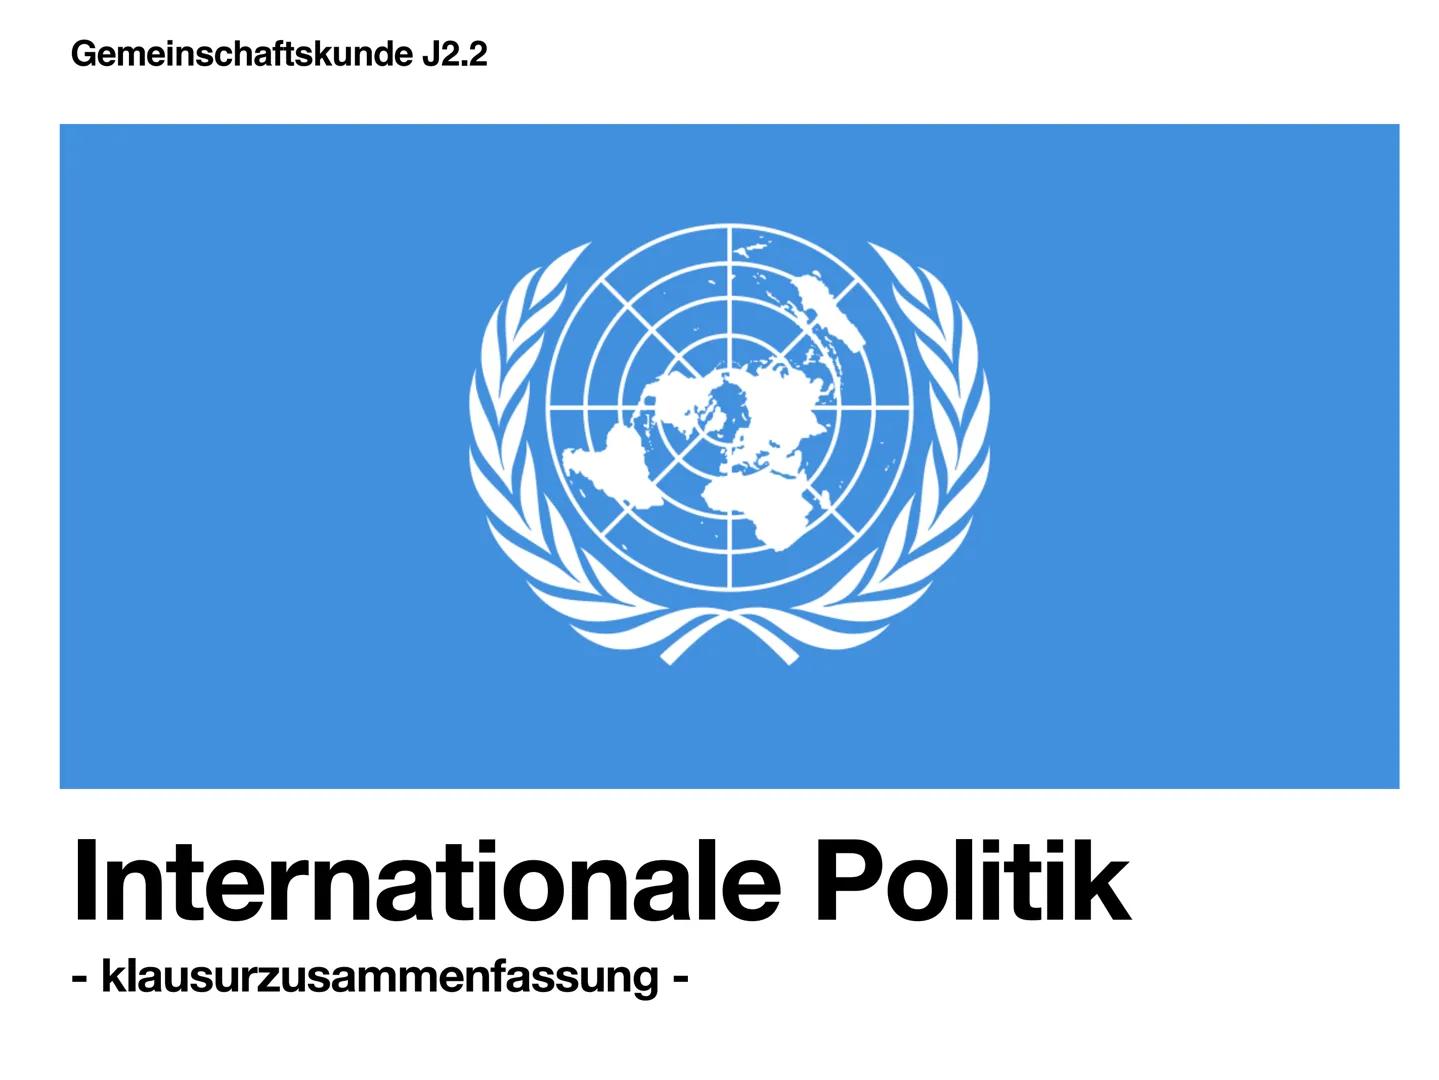 Gemeinschaftskunde J2.2
Internationale Politik
- klausurzusammenfassung - Gliederung
UNO
-> Allgemeines
-> Ziele & Grundsätze
-> Hauptorgane